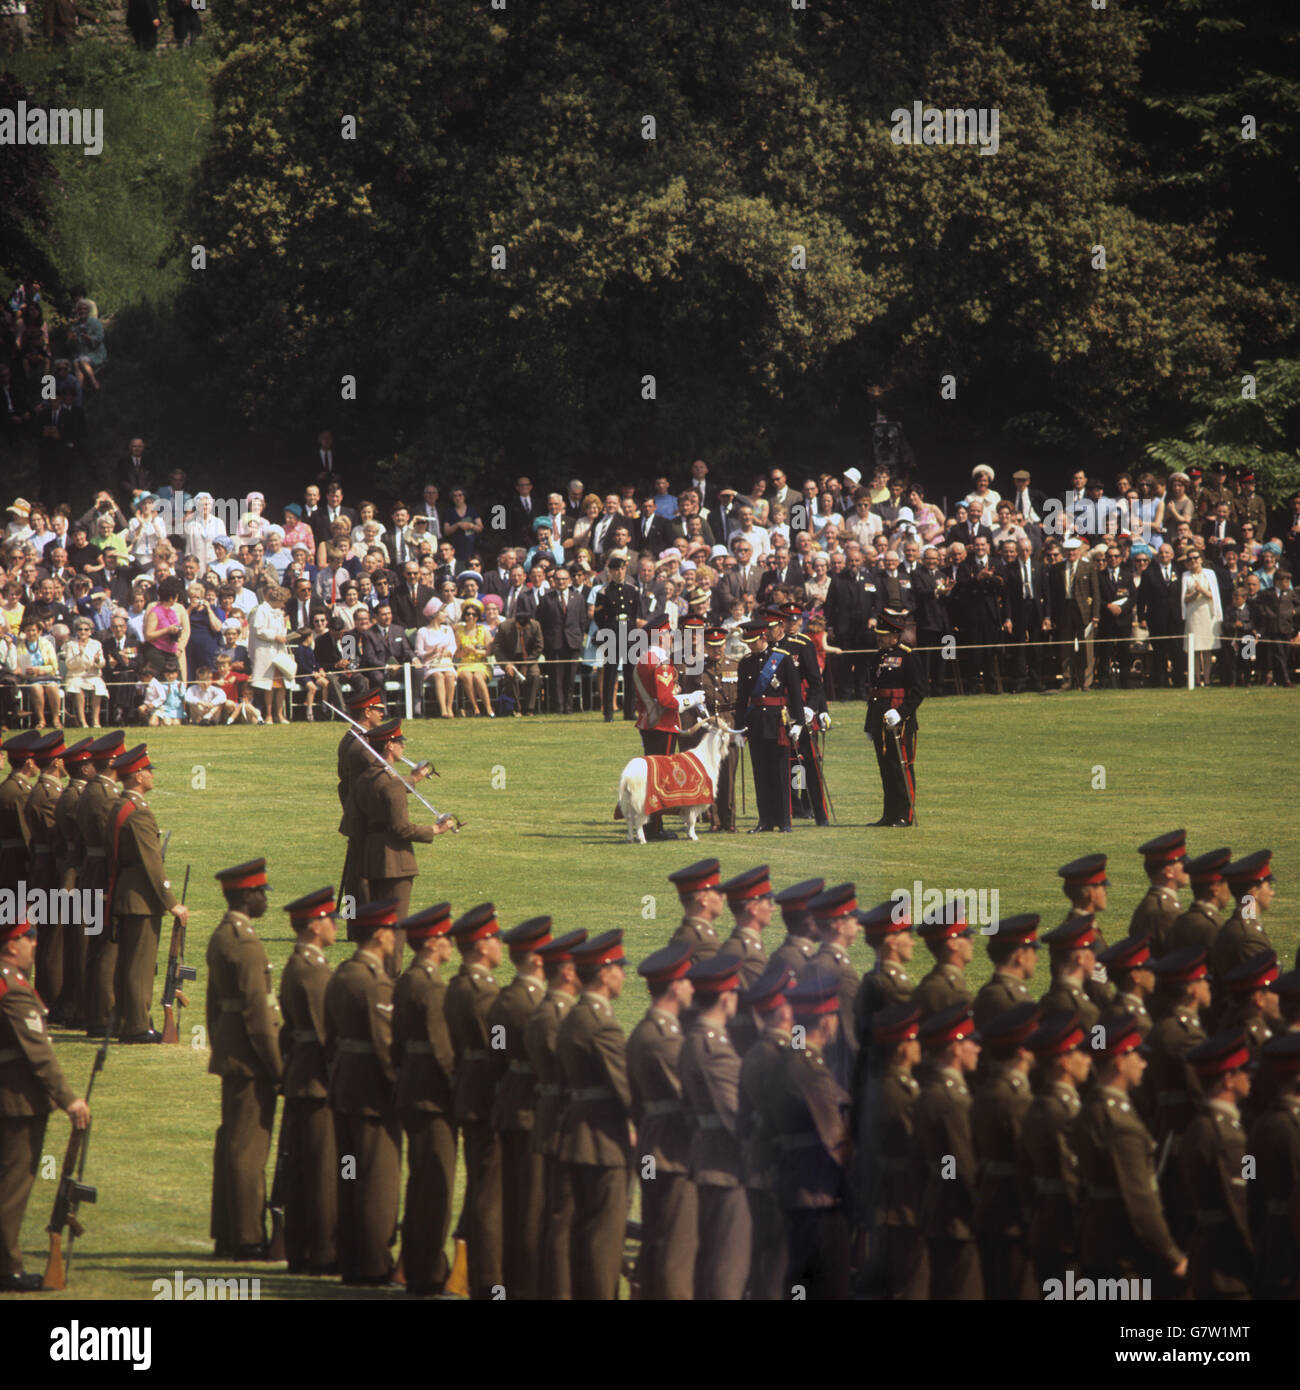 Taffy, die Maskottchen-Ziege des Regiments des neu gegründeten Royal Regiment of Wales, trifft den Prinz von Wales während der Parade des Regiments am Cardiff Castle. Der Prinz ist in der Uniform des Oberbefehlshabers des Regiments, das er bei seiner Investitur in Caernarvon am 1. Juli unter seinem Rang tragen wird. Stockfoto